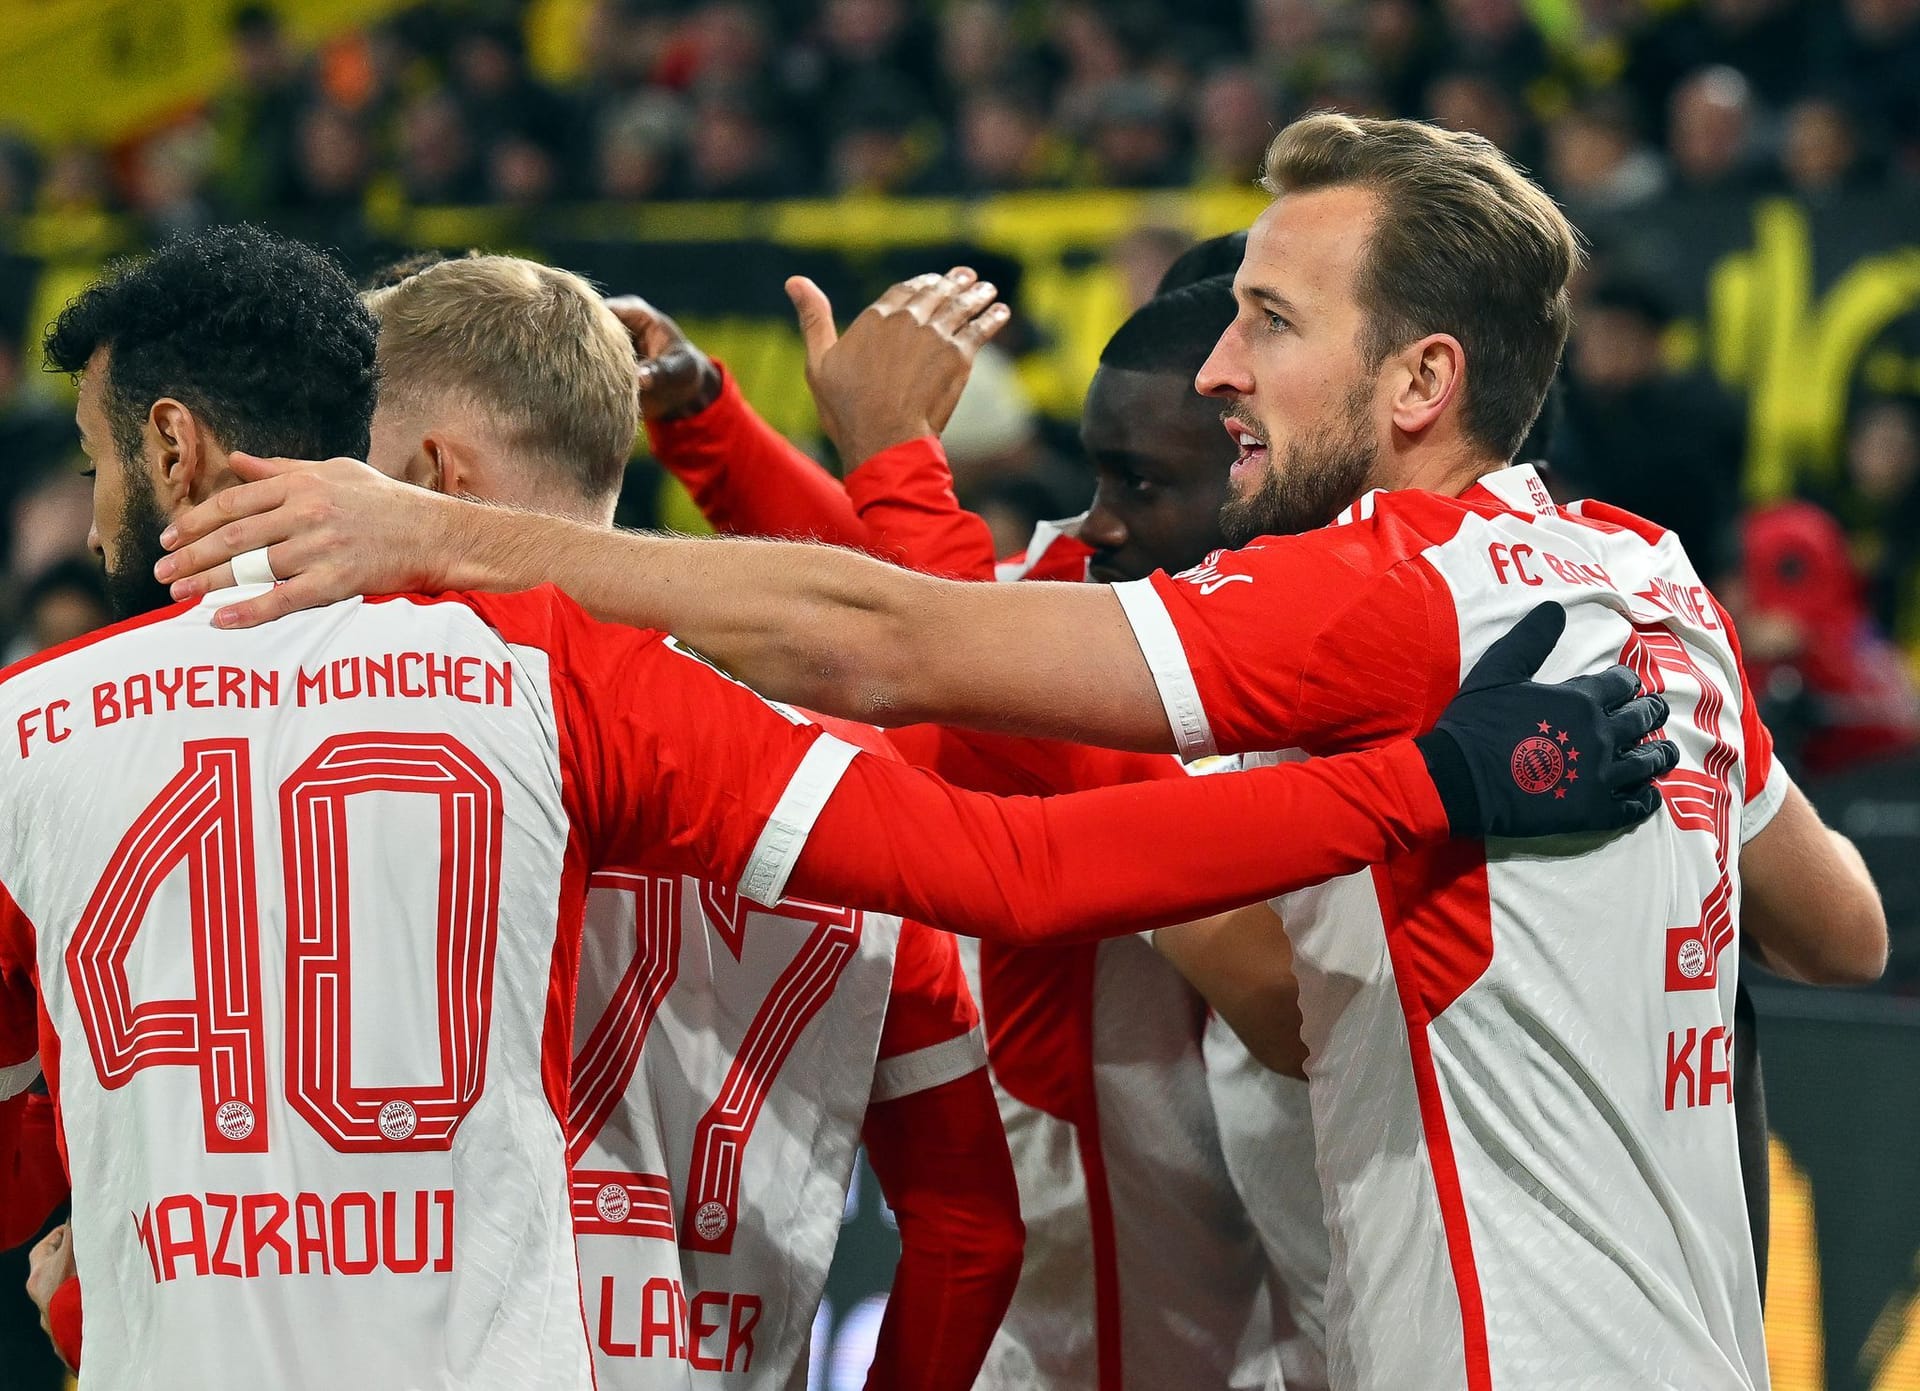 Der FC Bayern gewinnt das mit Spannung erwartete Topspiel in Dortmund souverän mit 4:0. Leroy Sané und Harry Kane präsentieren sich dabei einmal mehr in Galaform, andere Bayern-Profis können nicht ganz so überzeugen. Die Einzelkritik.